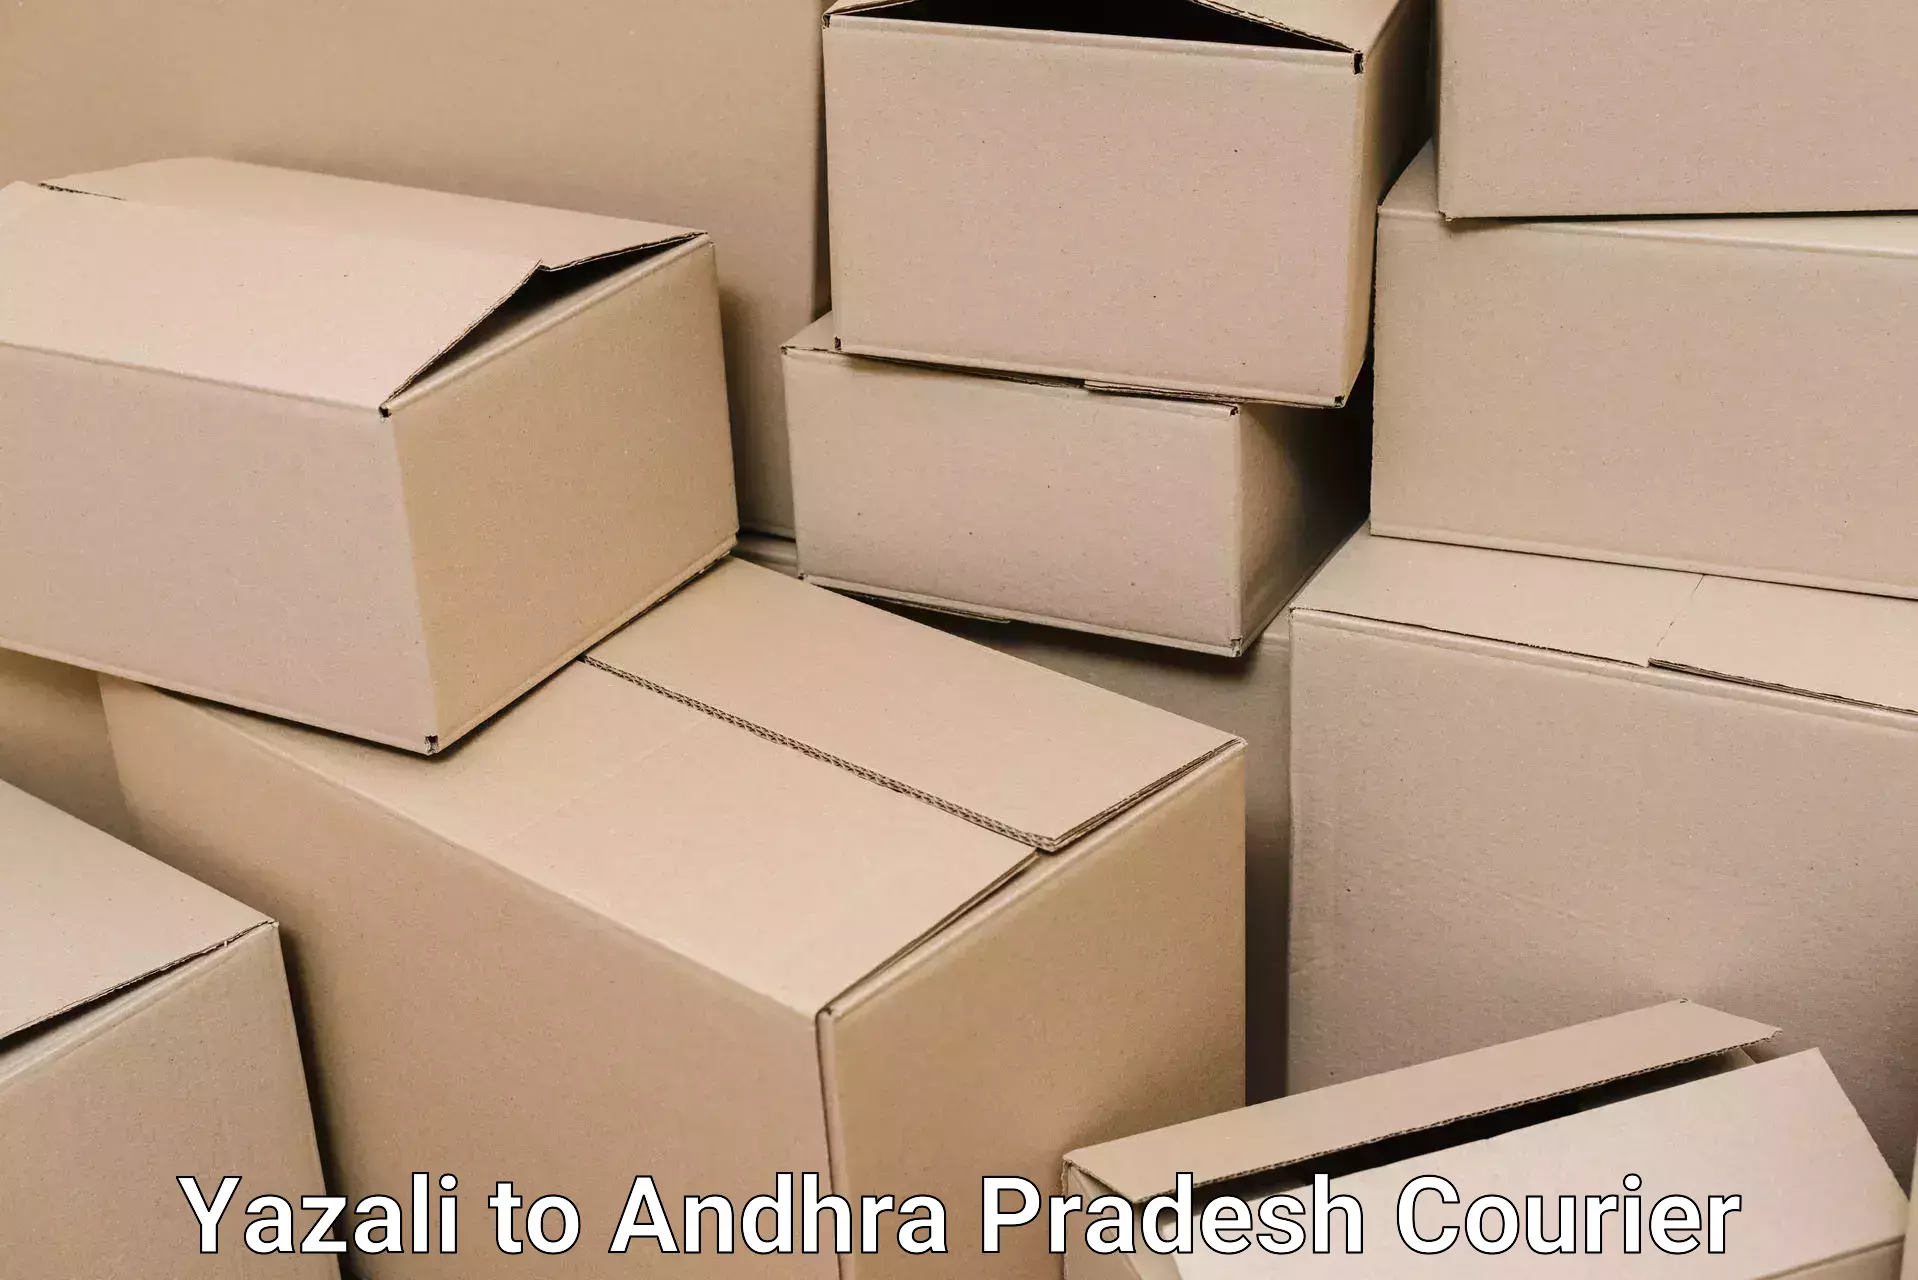 Furniture moving experts Yazali to Andhra Pradesh